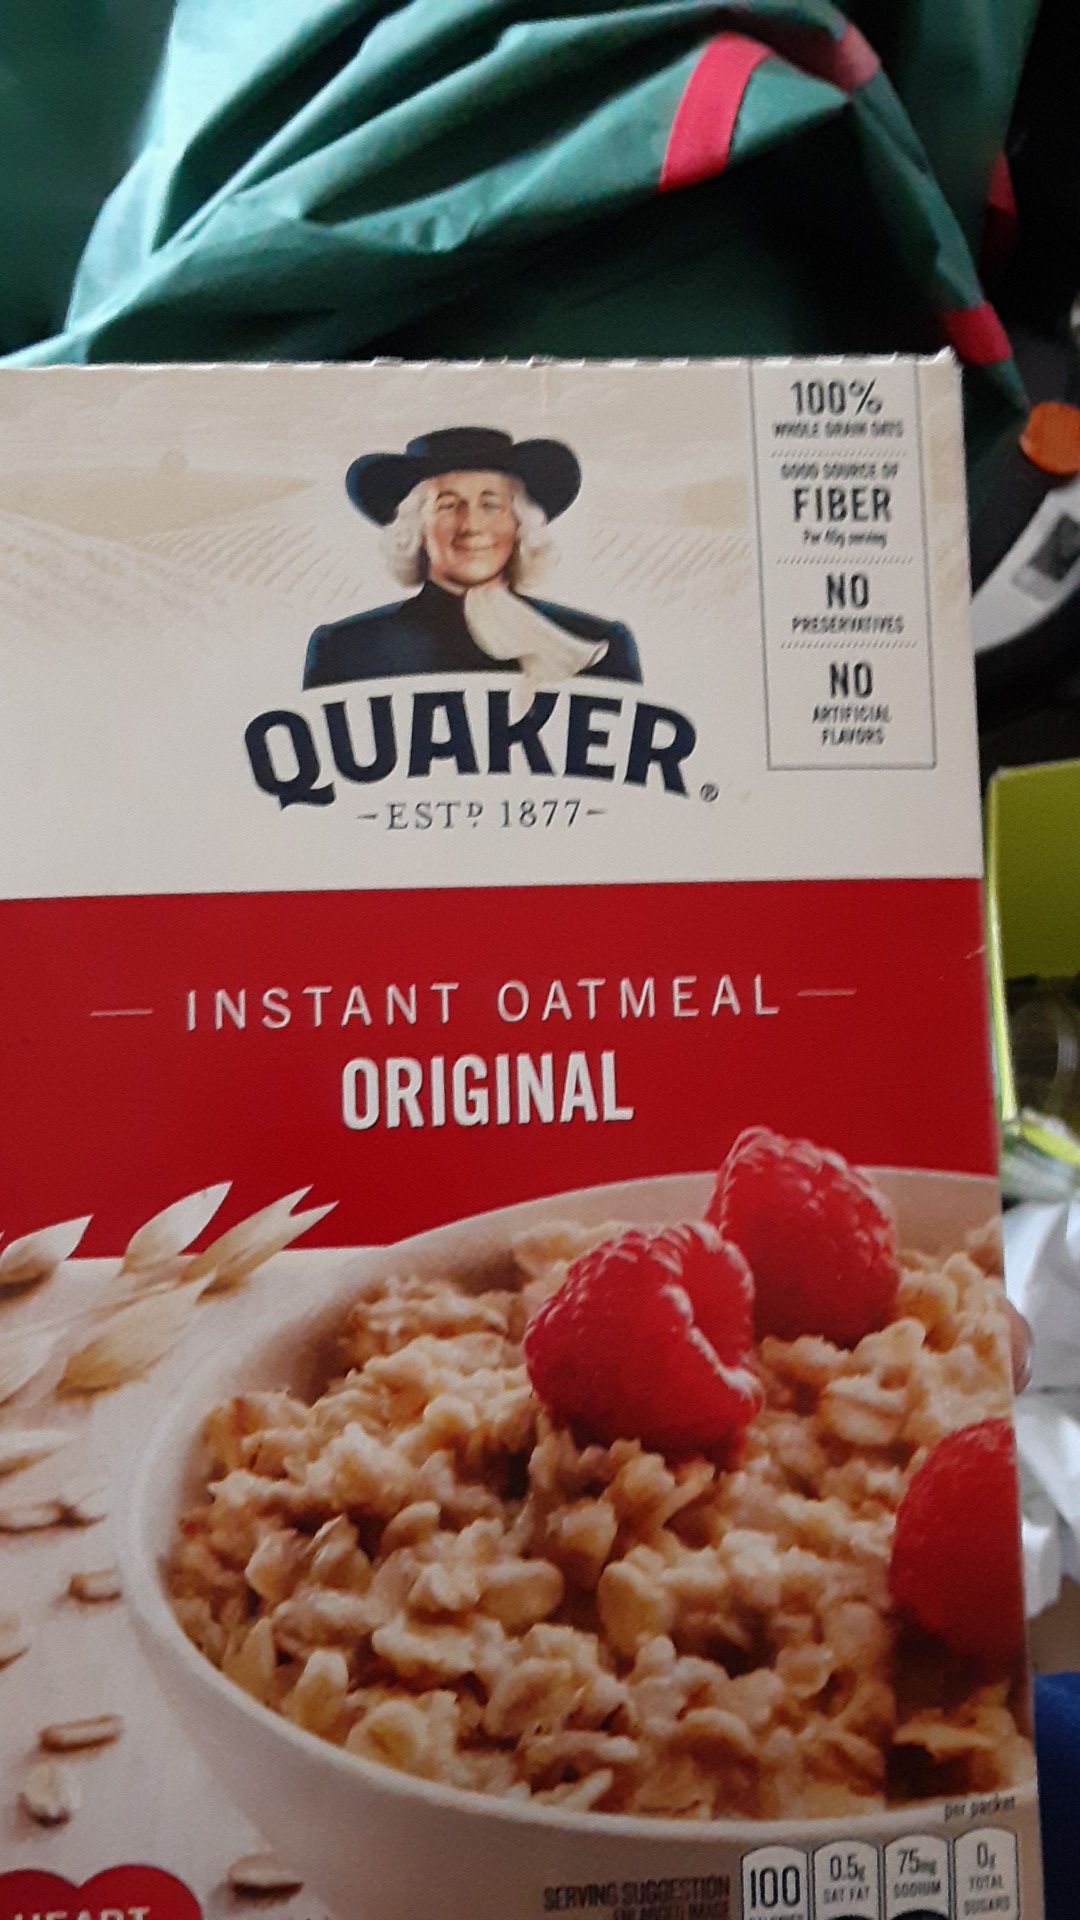 Free oatmeal